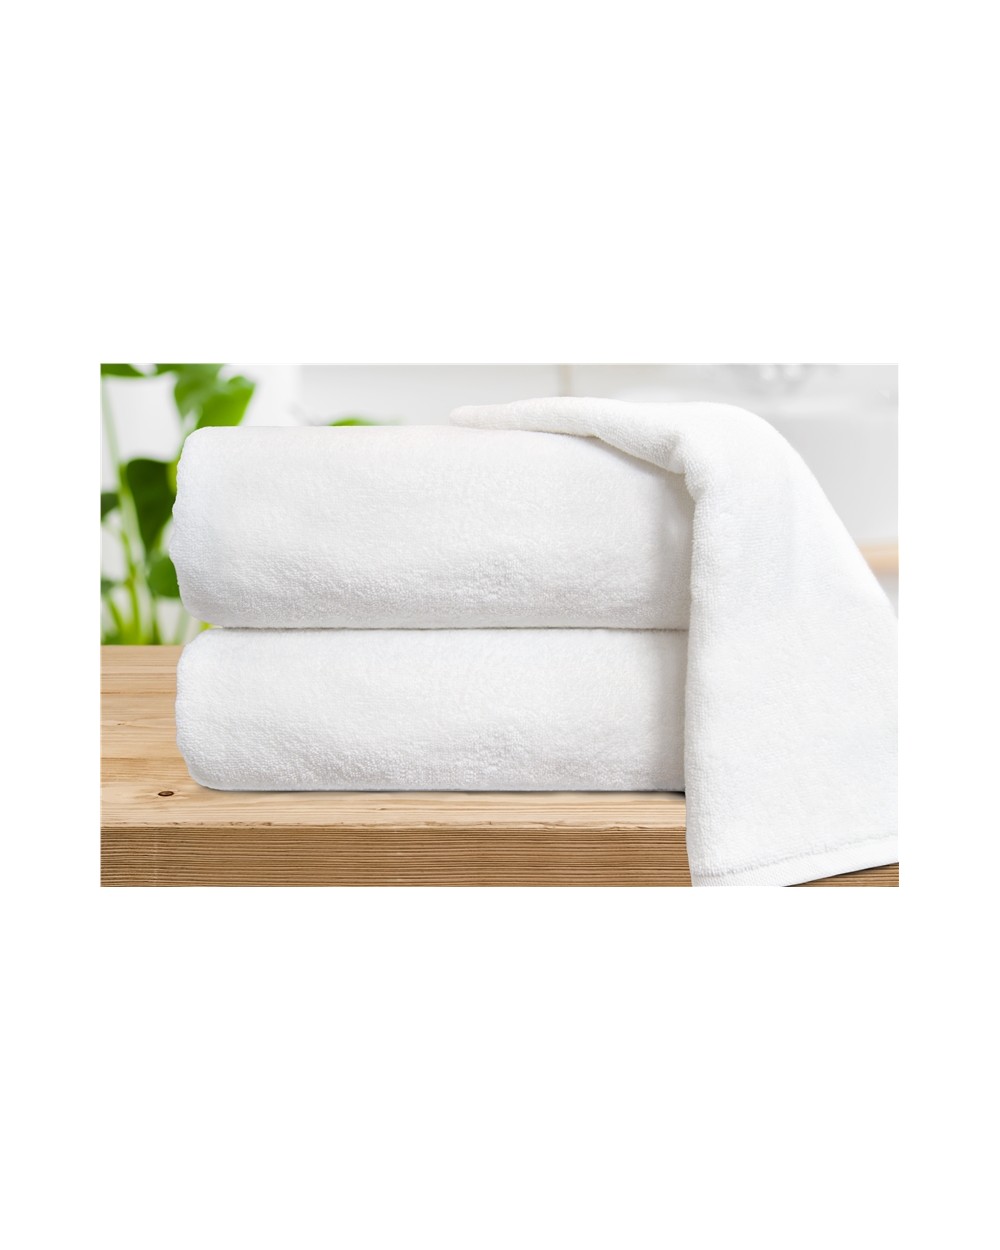 Ręcznik bawełna 70x140 Baden-Baden biały Greno